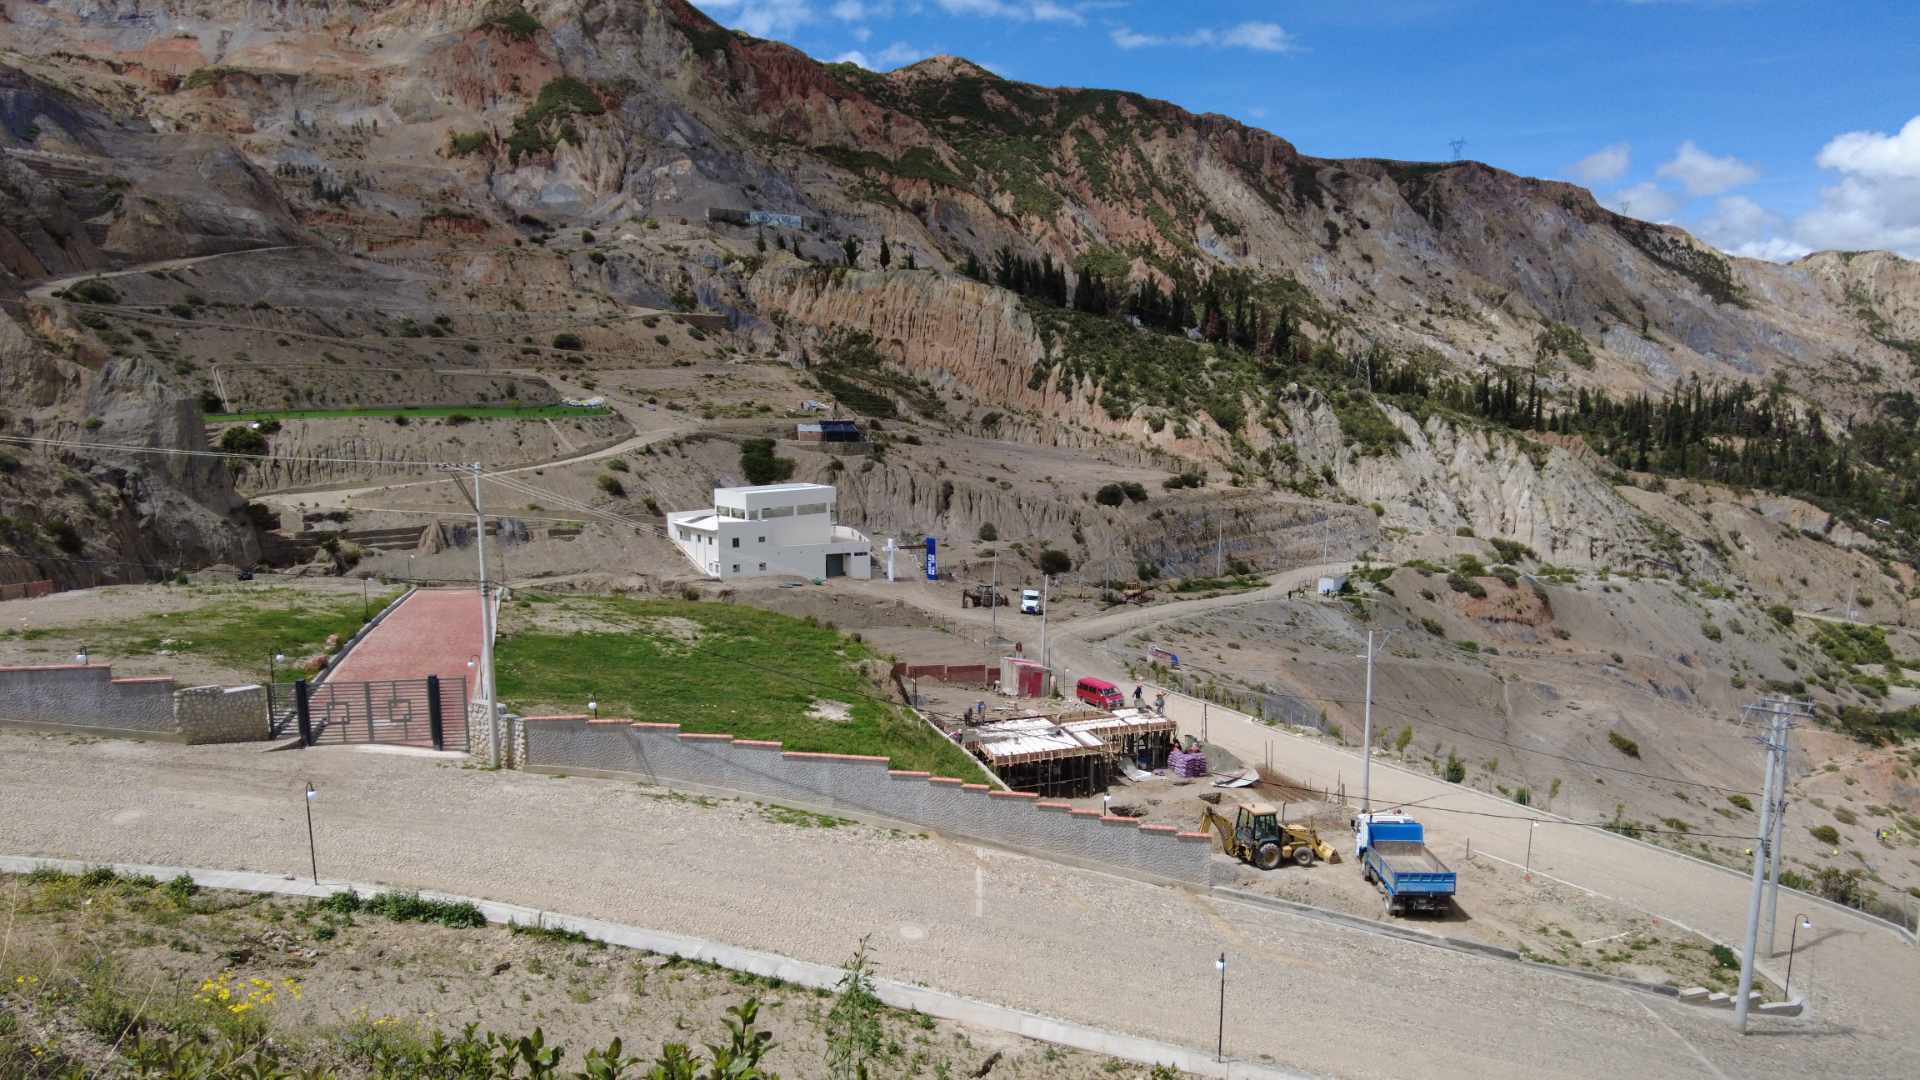 Terreno en Auquisamaña en La Paz    Foto 1